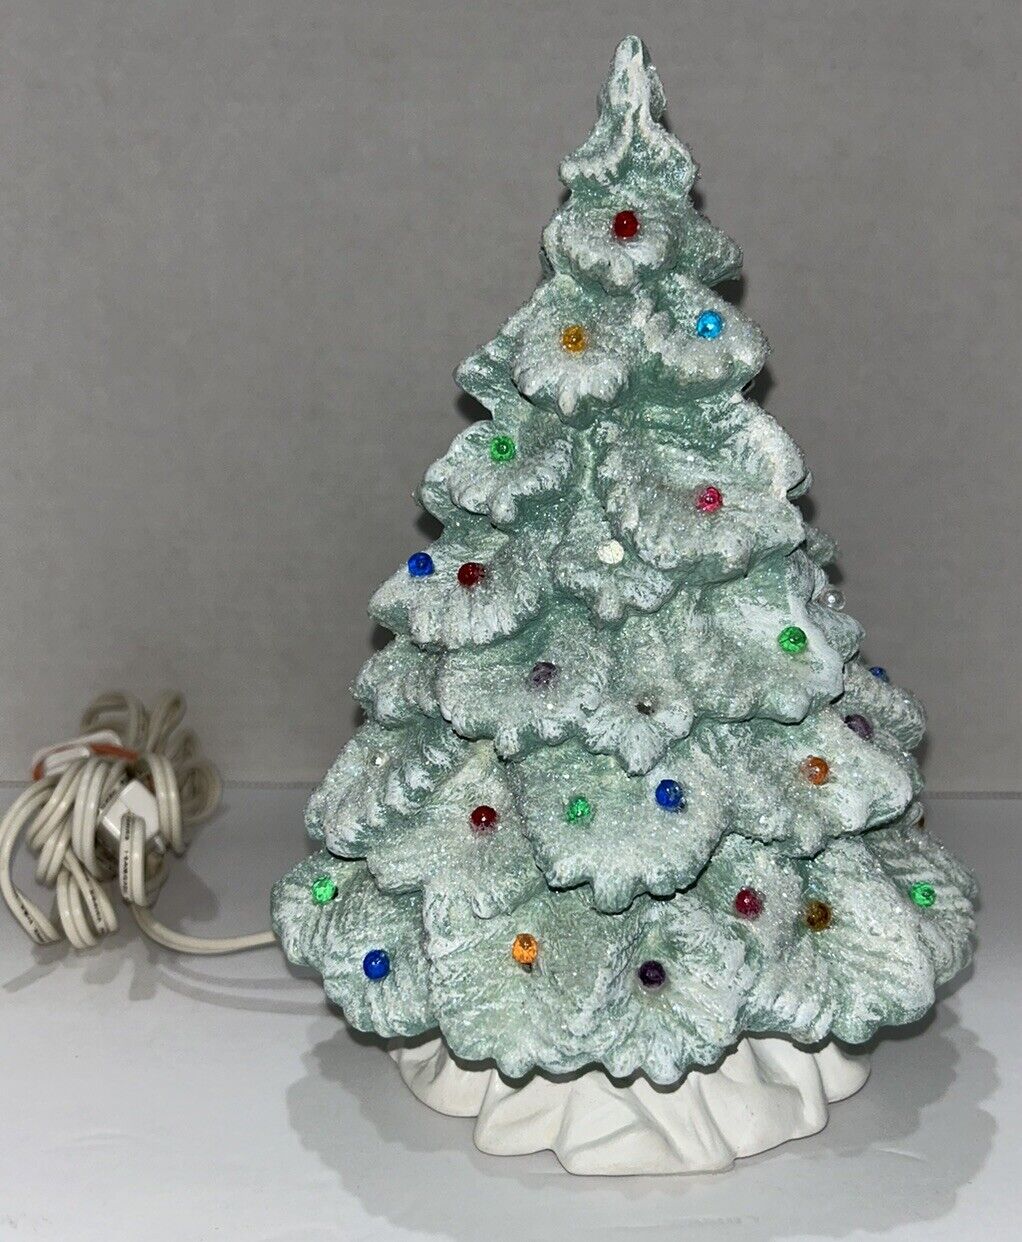 1990s Vtg Nowell’s Inc Glitter 8” Tall Ceramic Light Up Christmas Tree Works